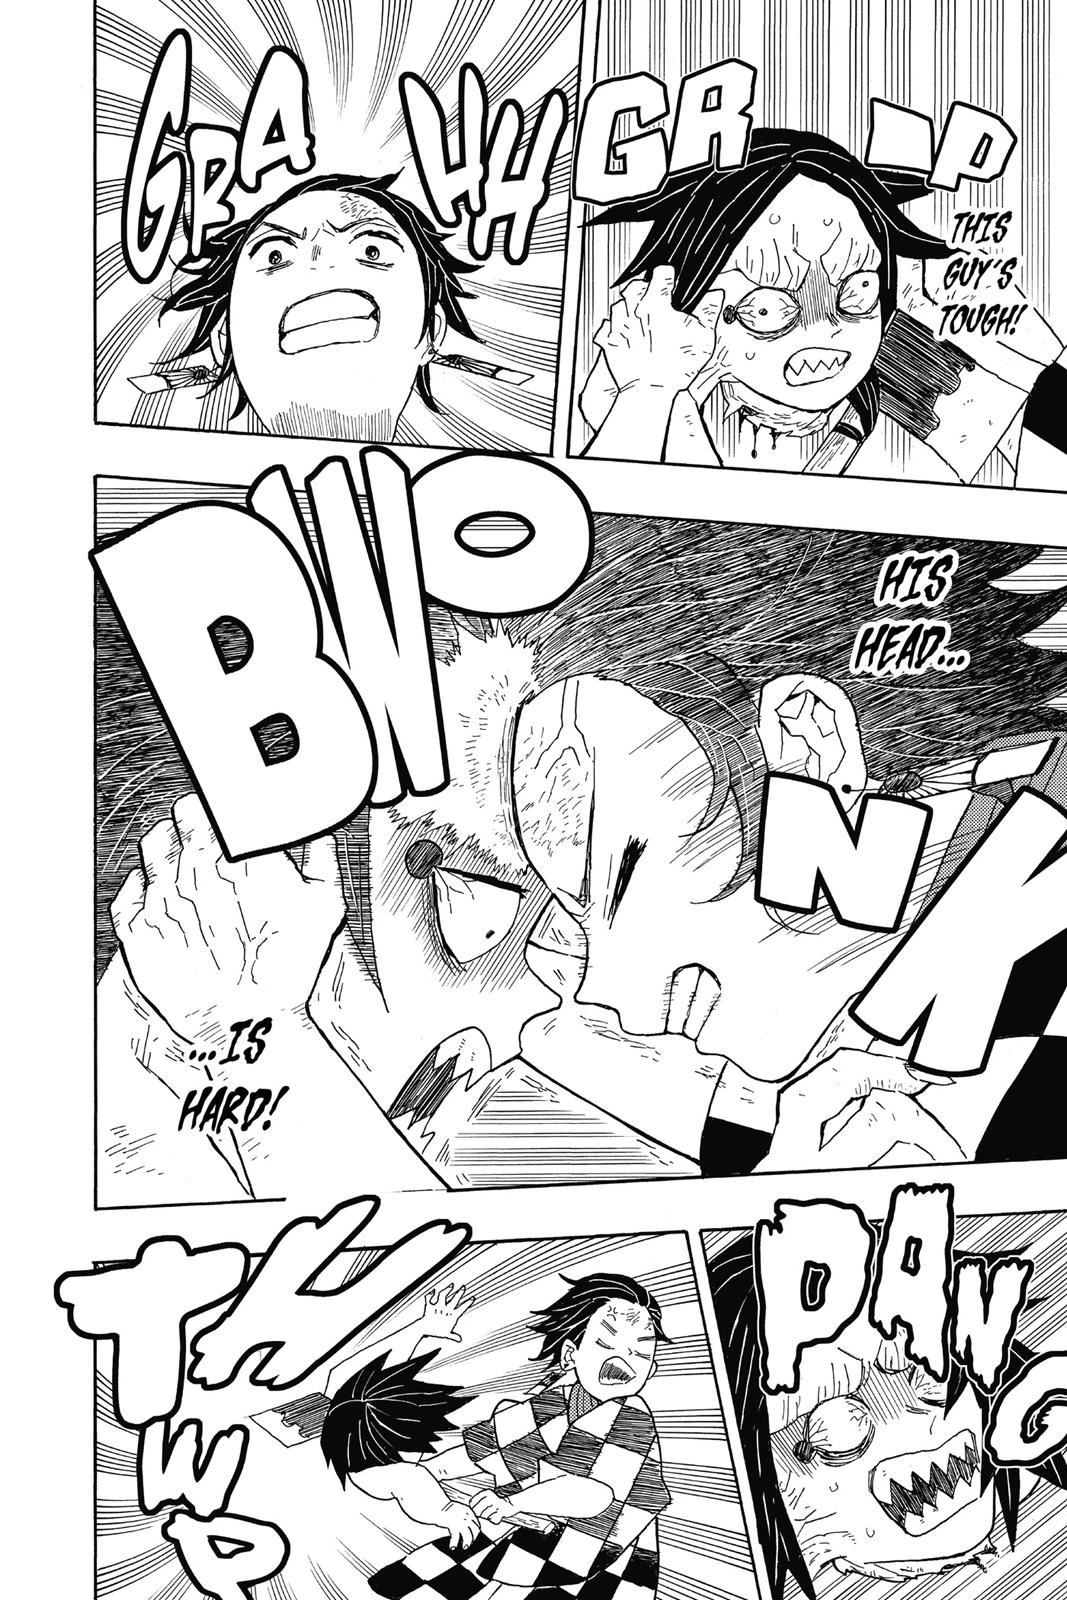 Demon Slayer Manga Manga Chapter - 2 - image 12